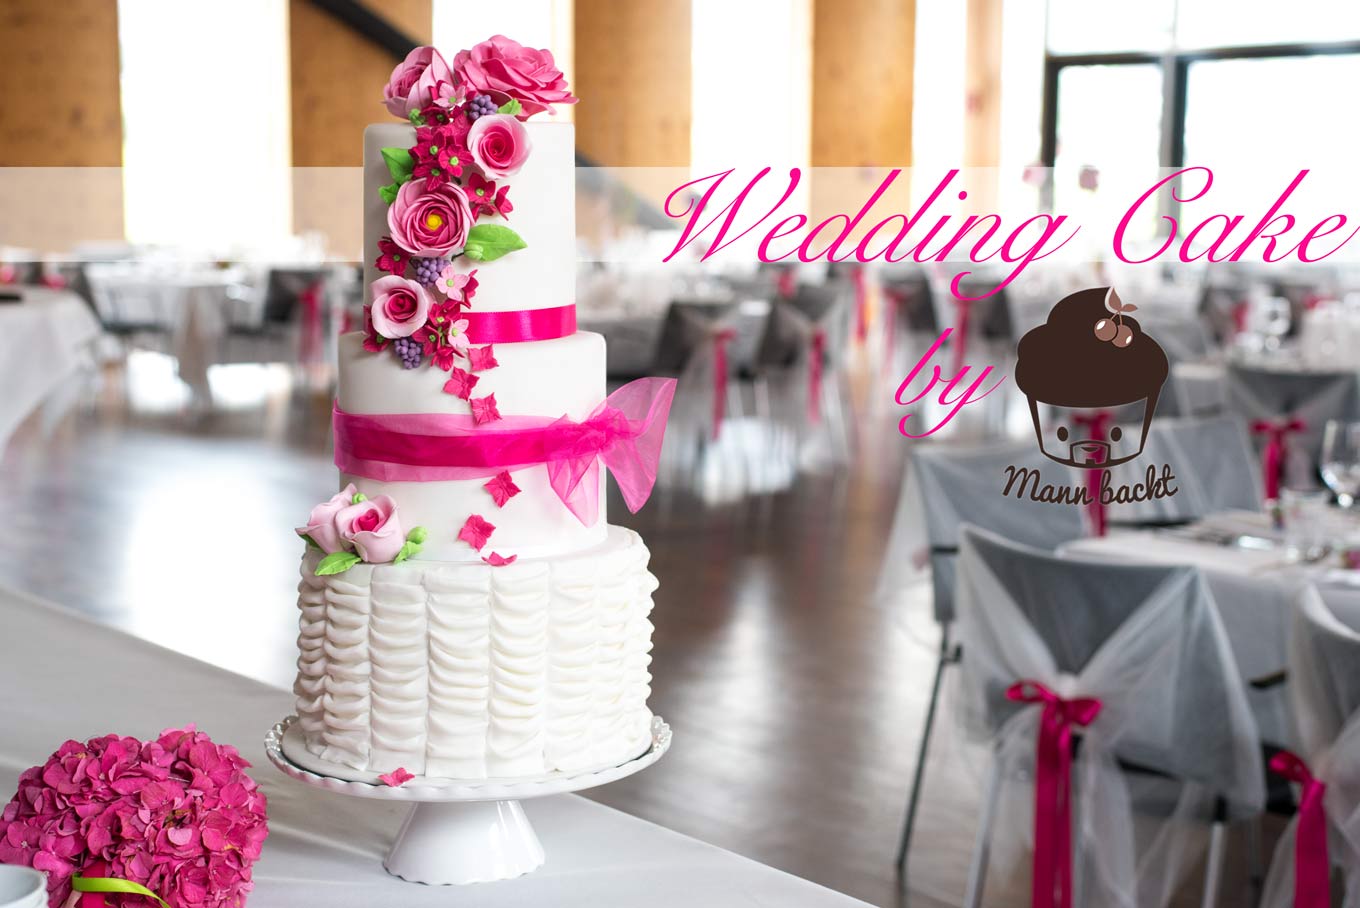 Hochzeitstorte-Mann-backt-Tortendesign-pink-Wedding-Cake-Moschen-(1)